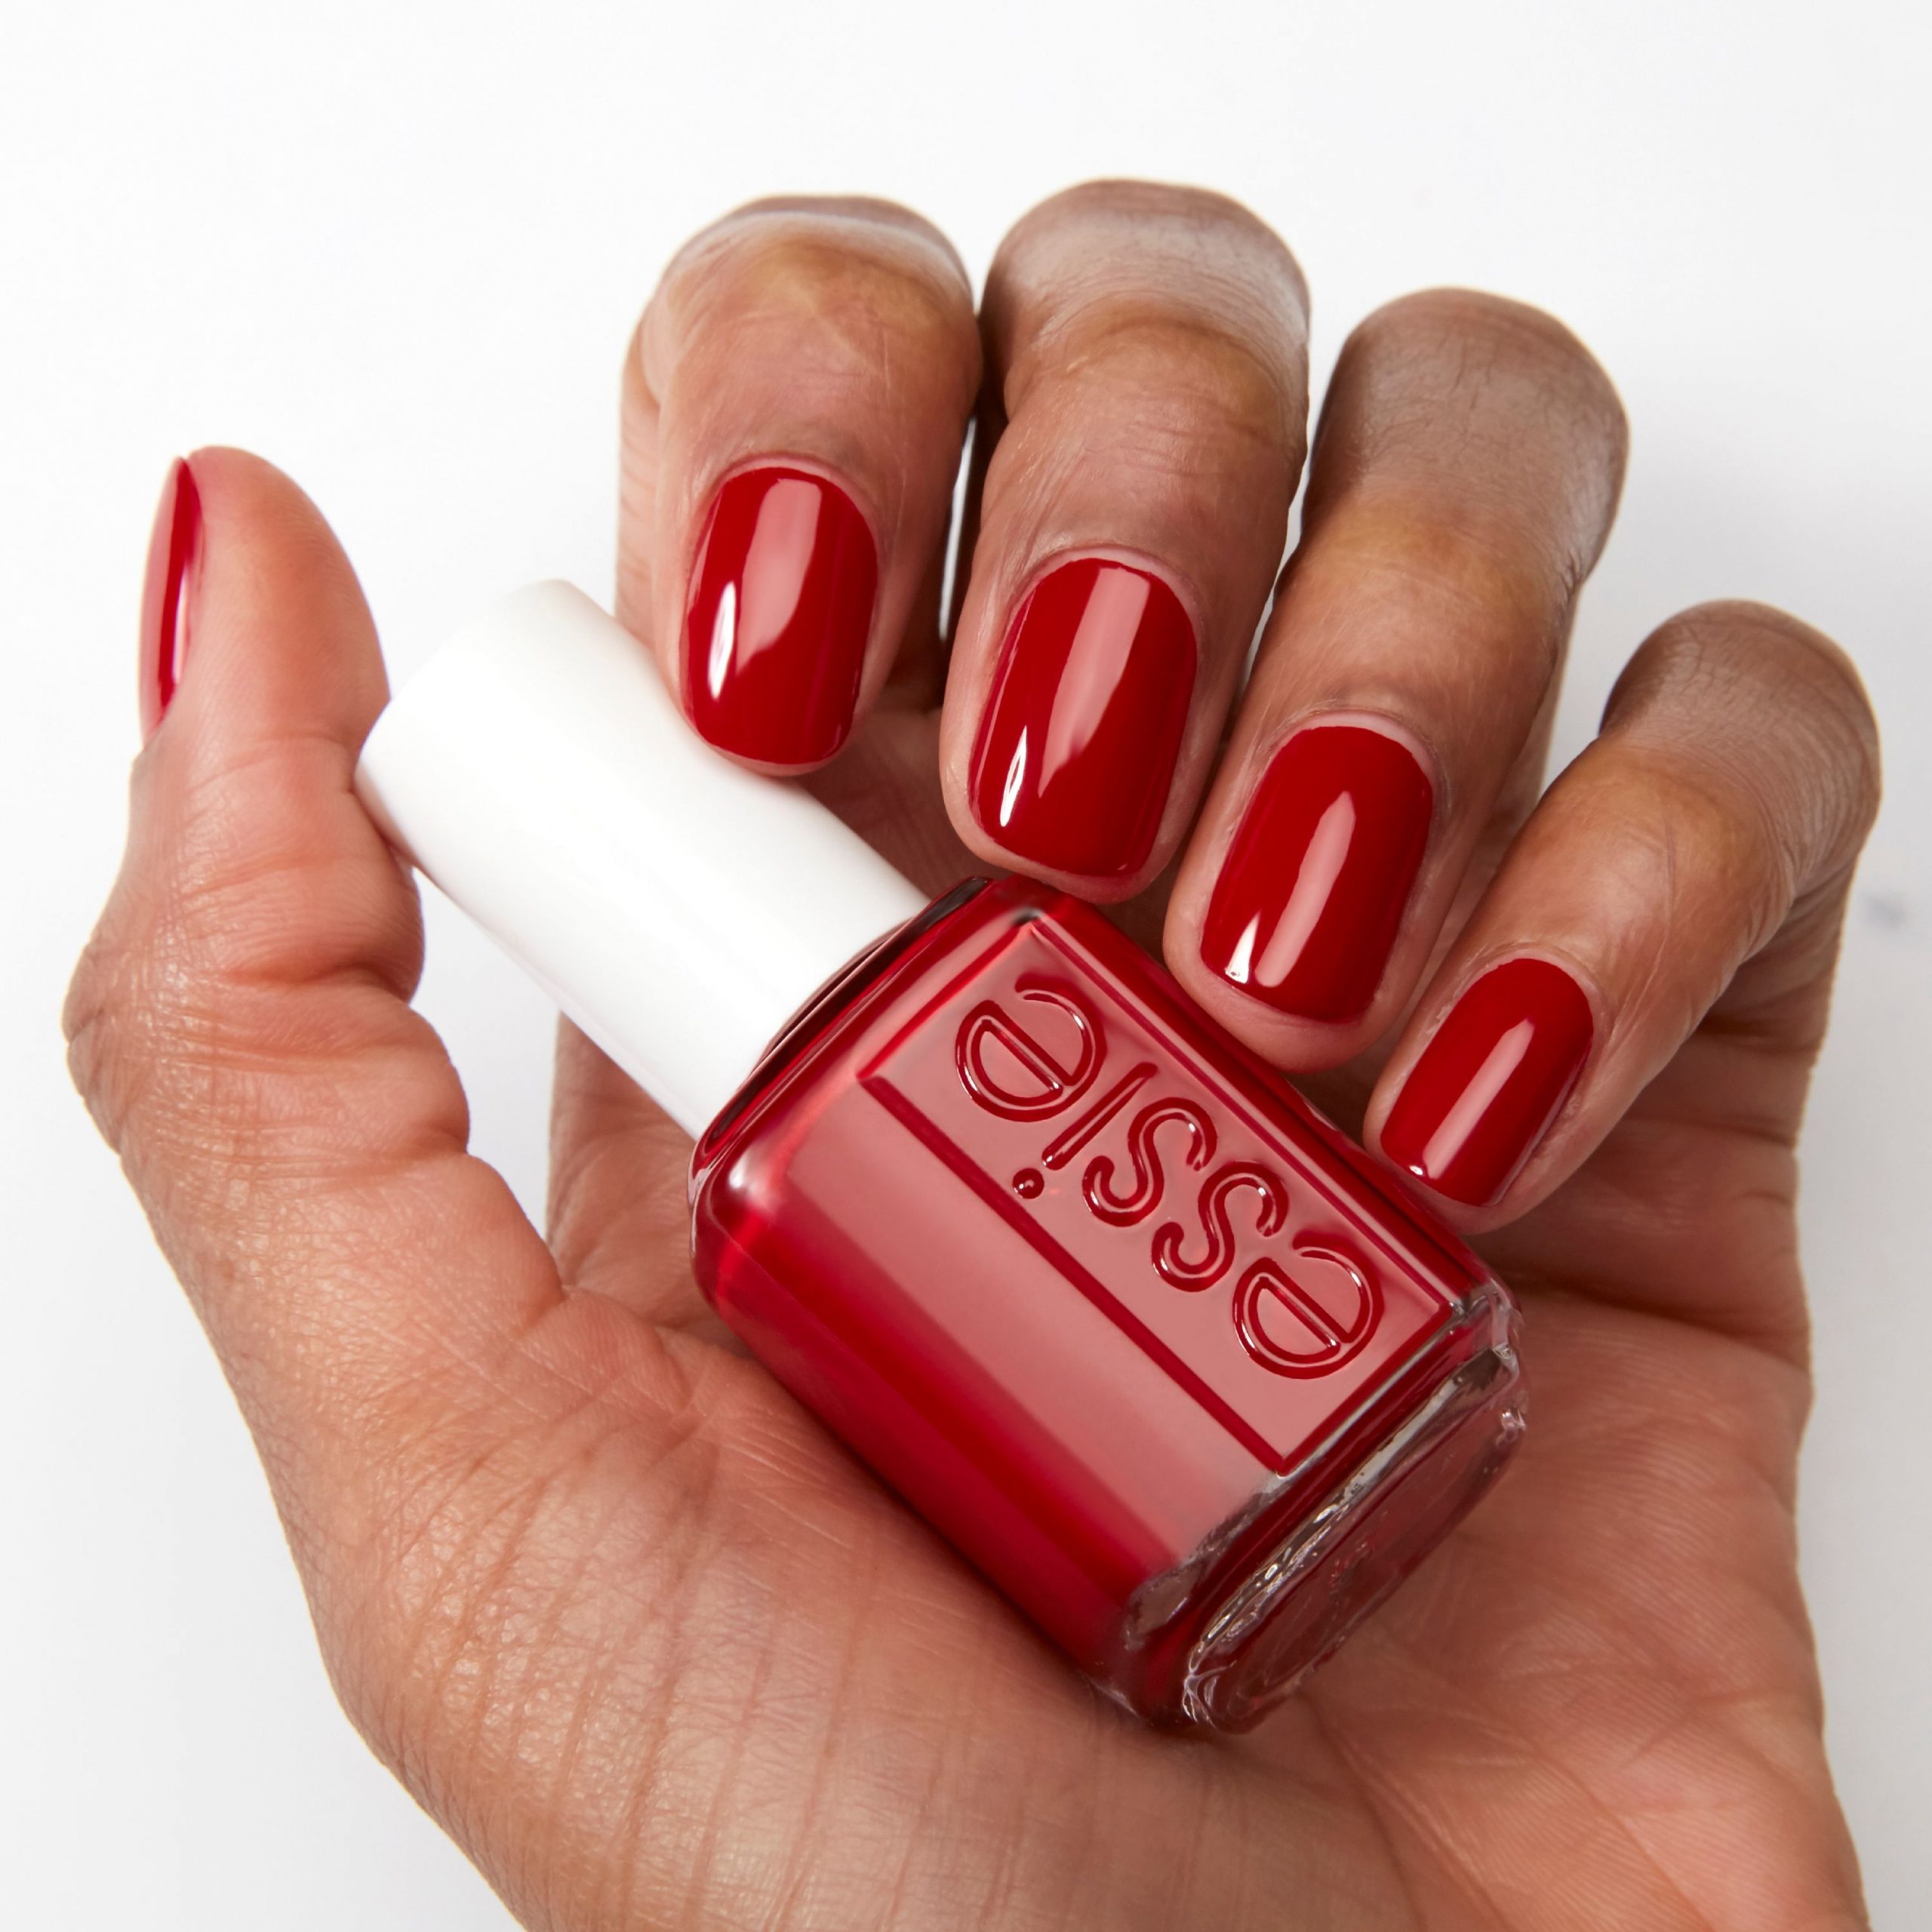 essie nail polish, forever yummy, red nail polish, 0.46 fl. oz.